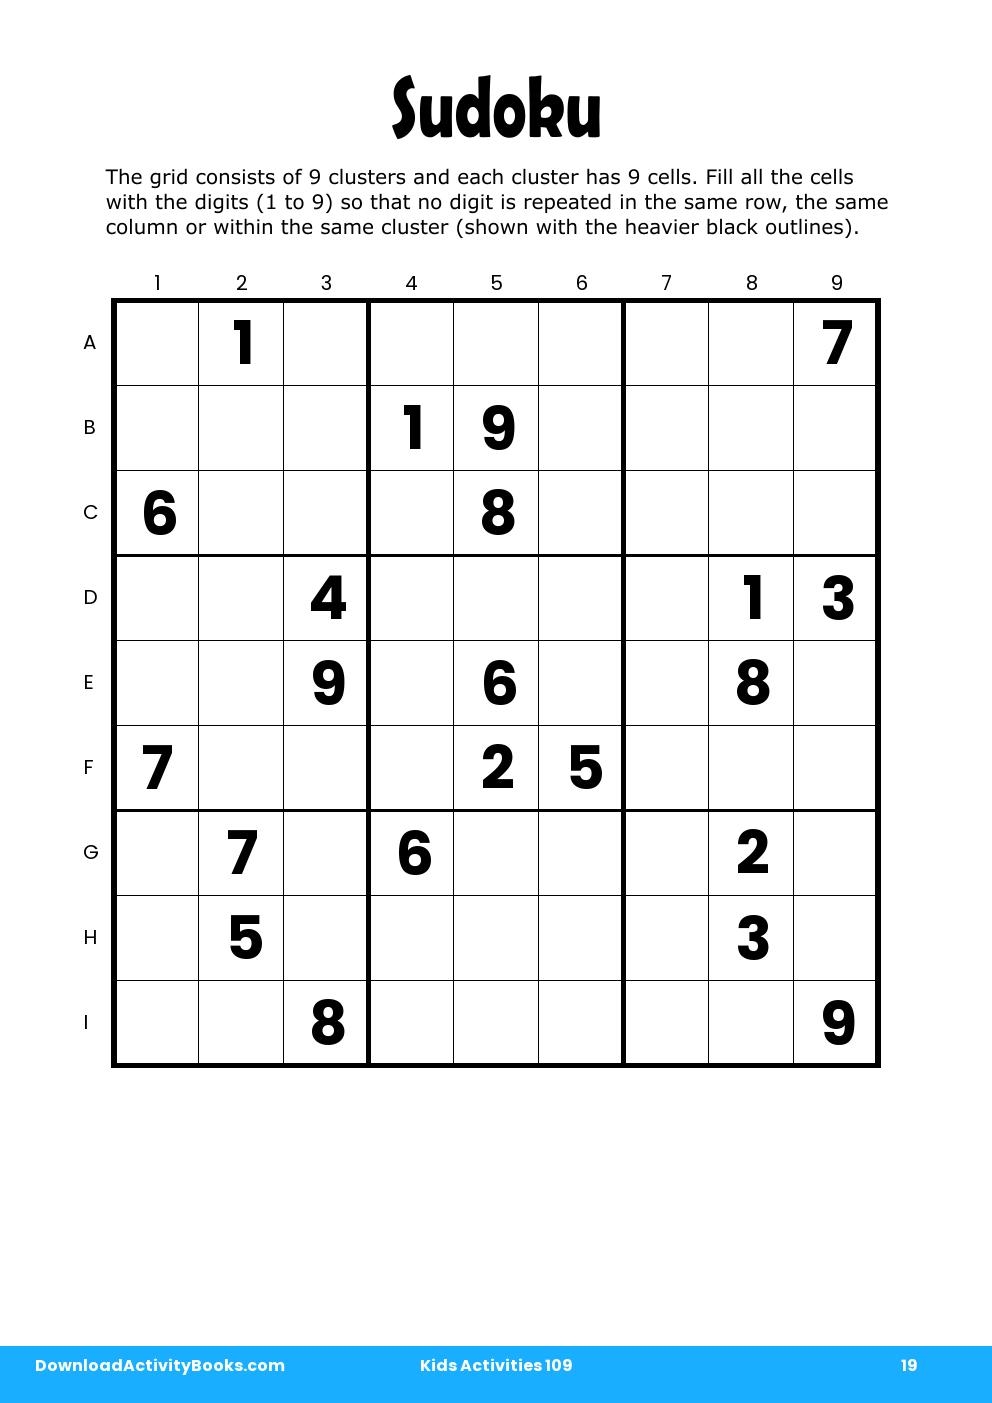 Sudoku in Kids Activities 109